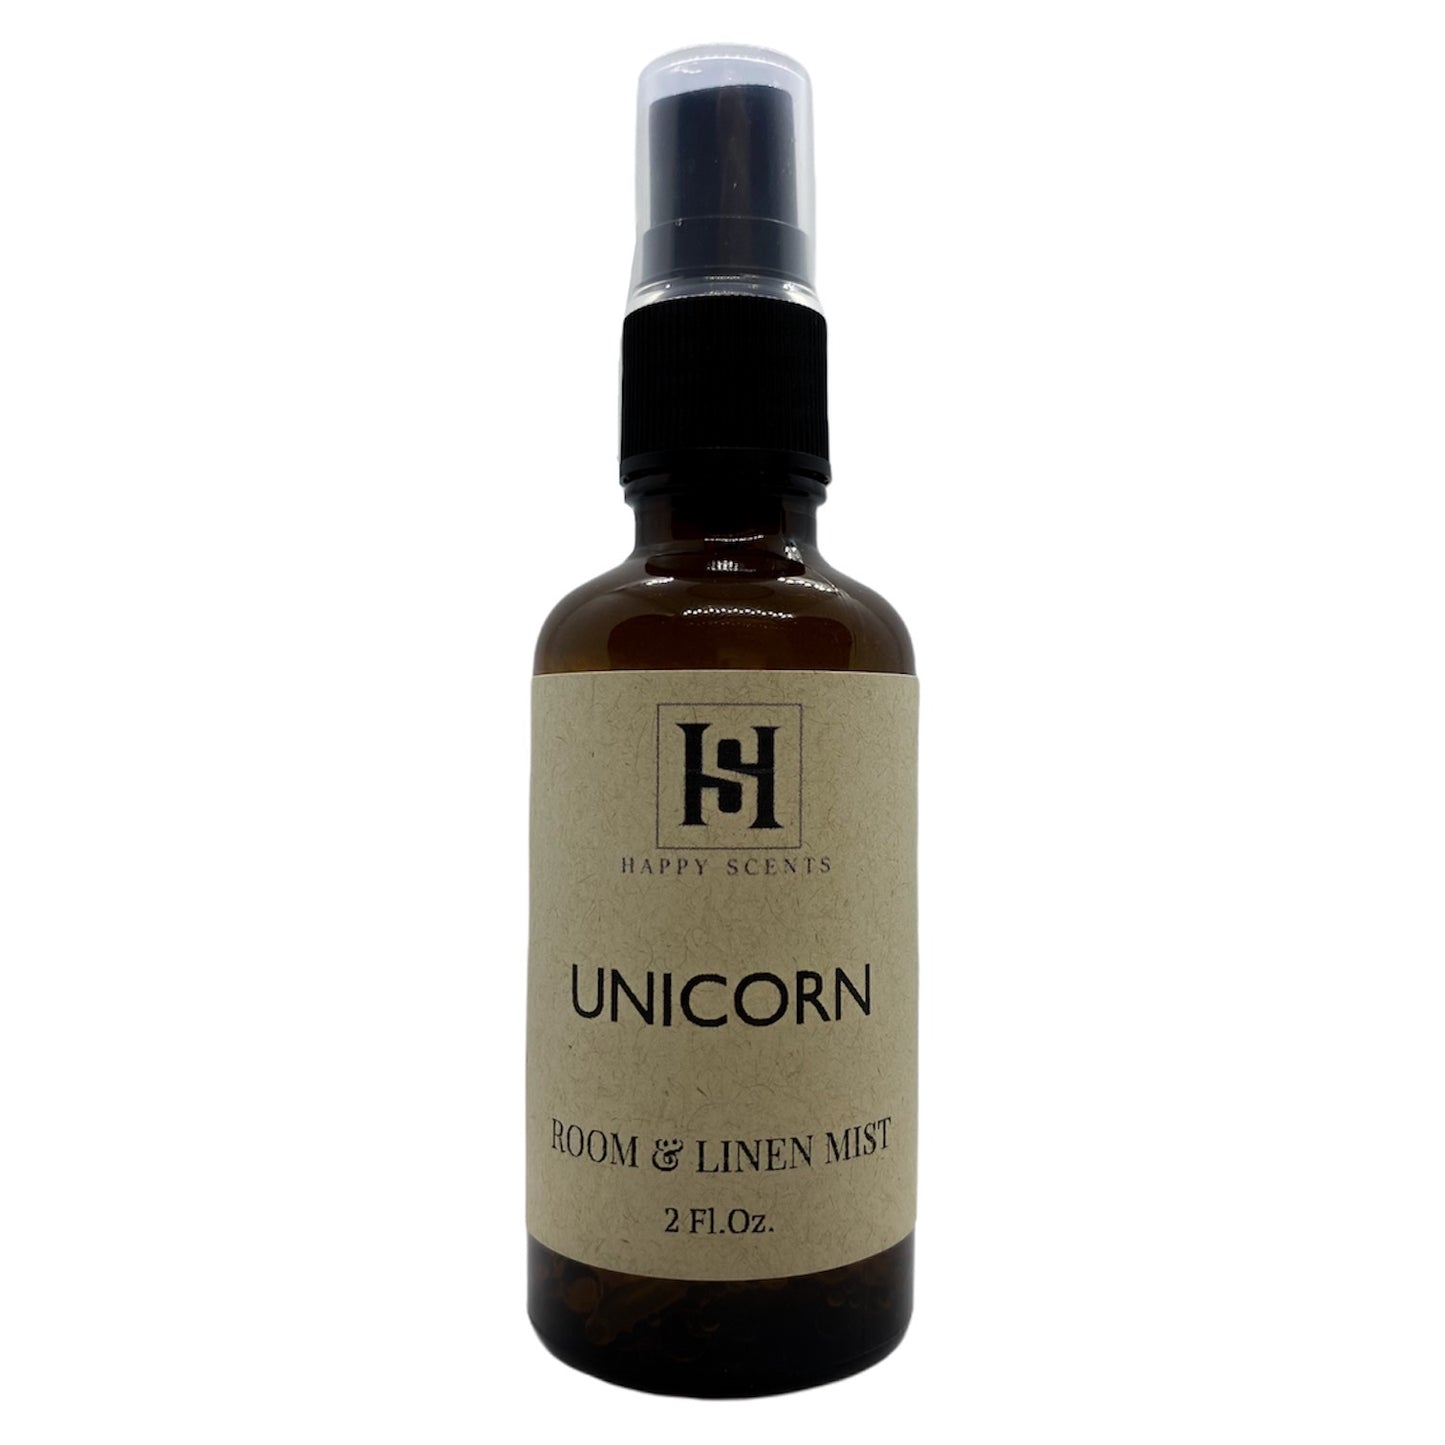 Unicorn Room & Linen Mist